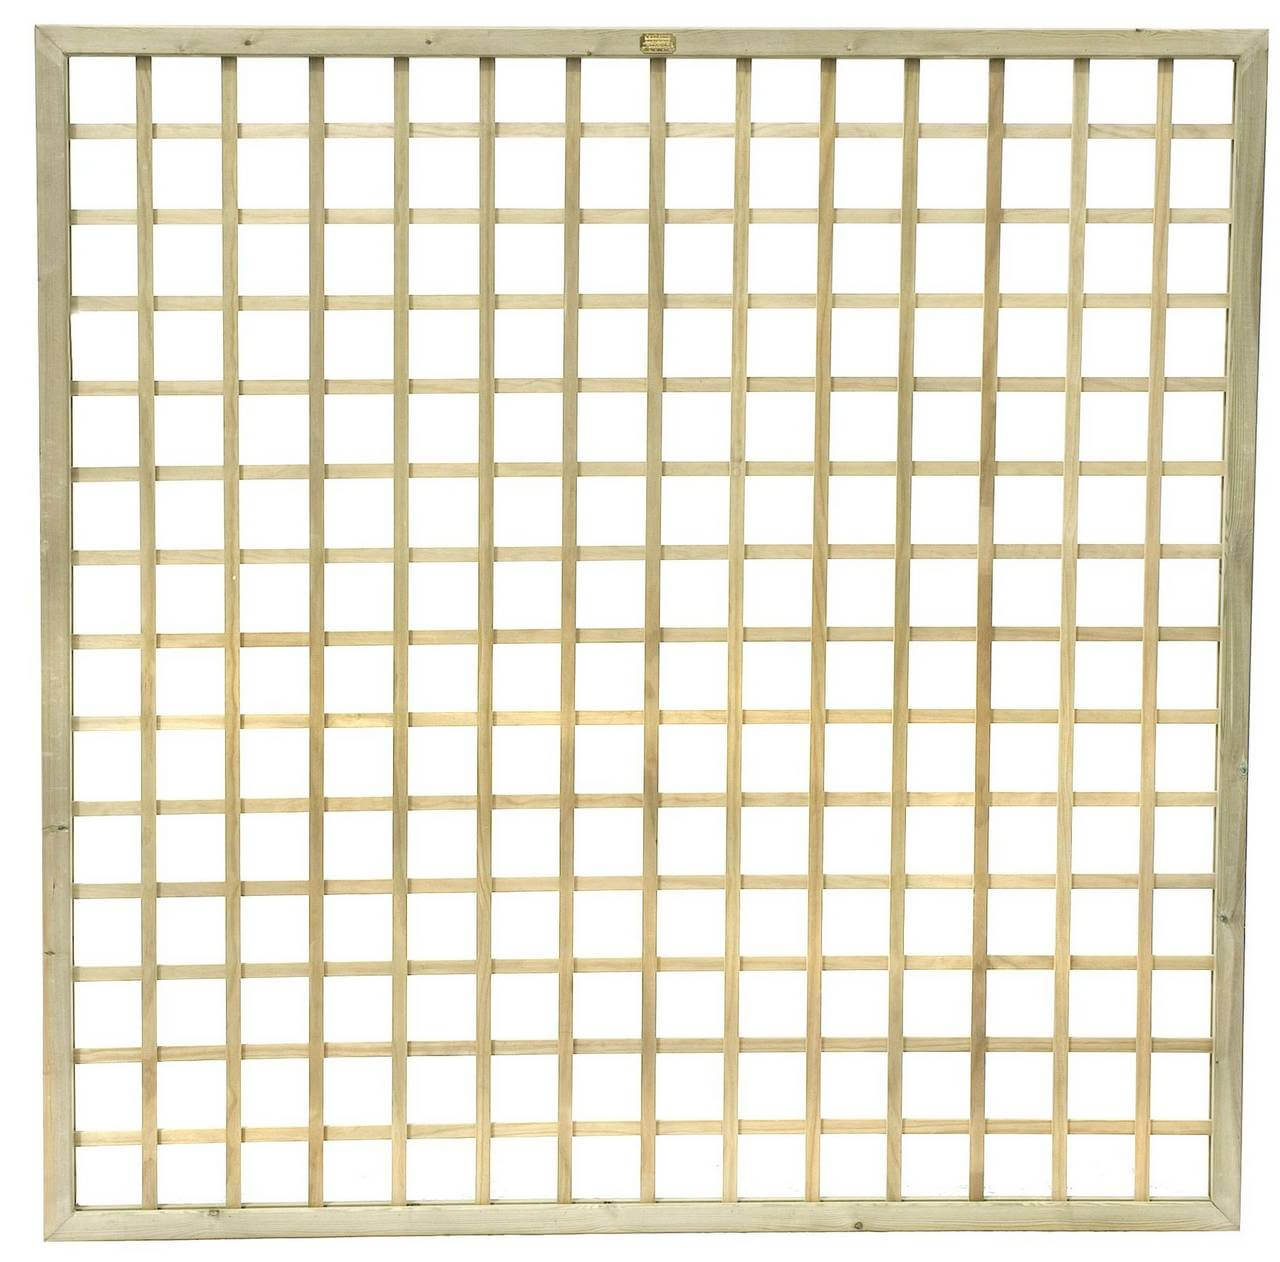 741300 - Square Trellis panel